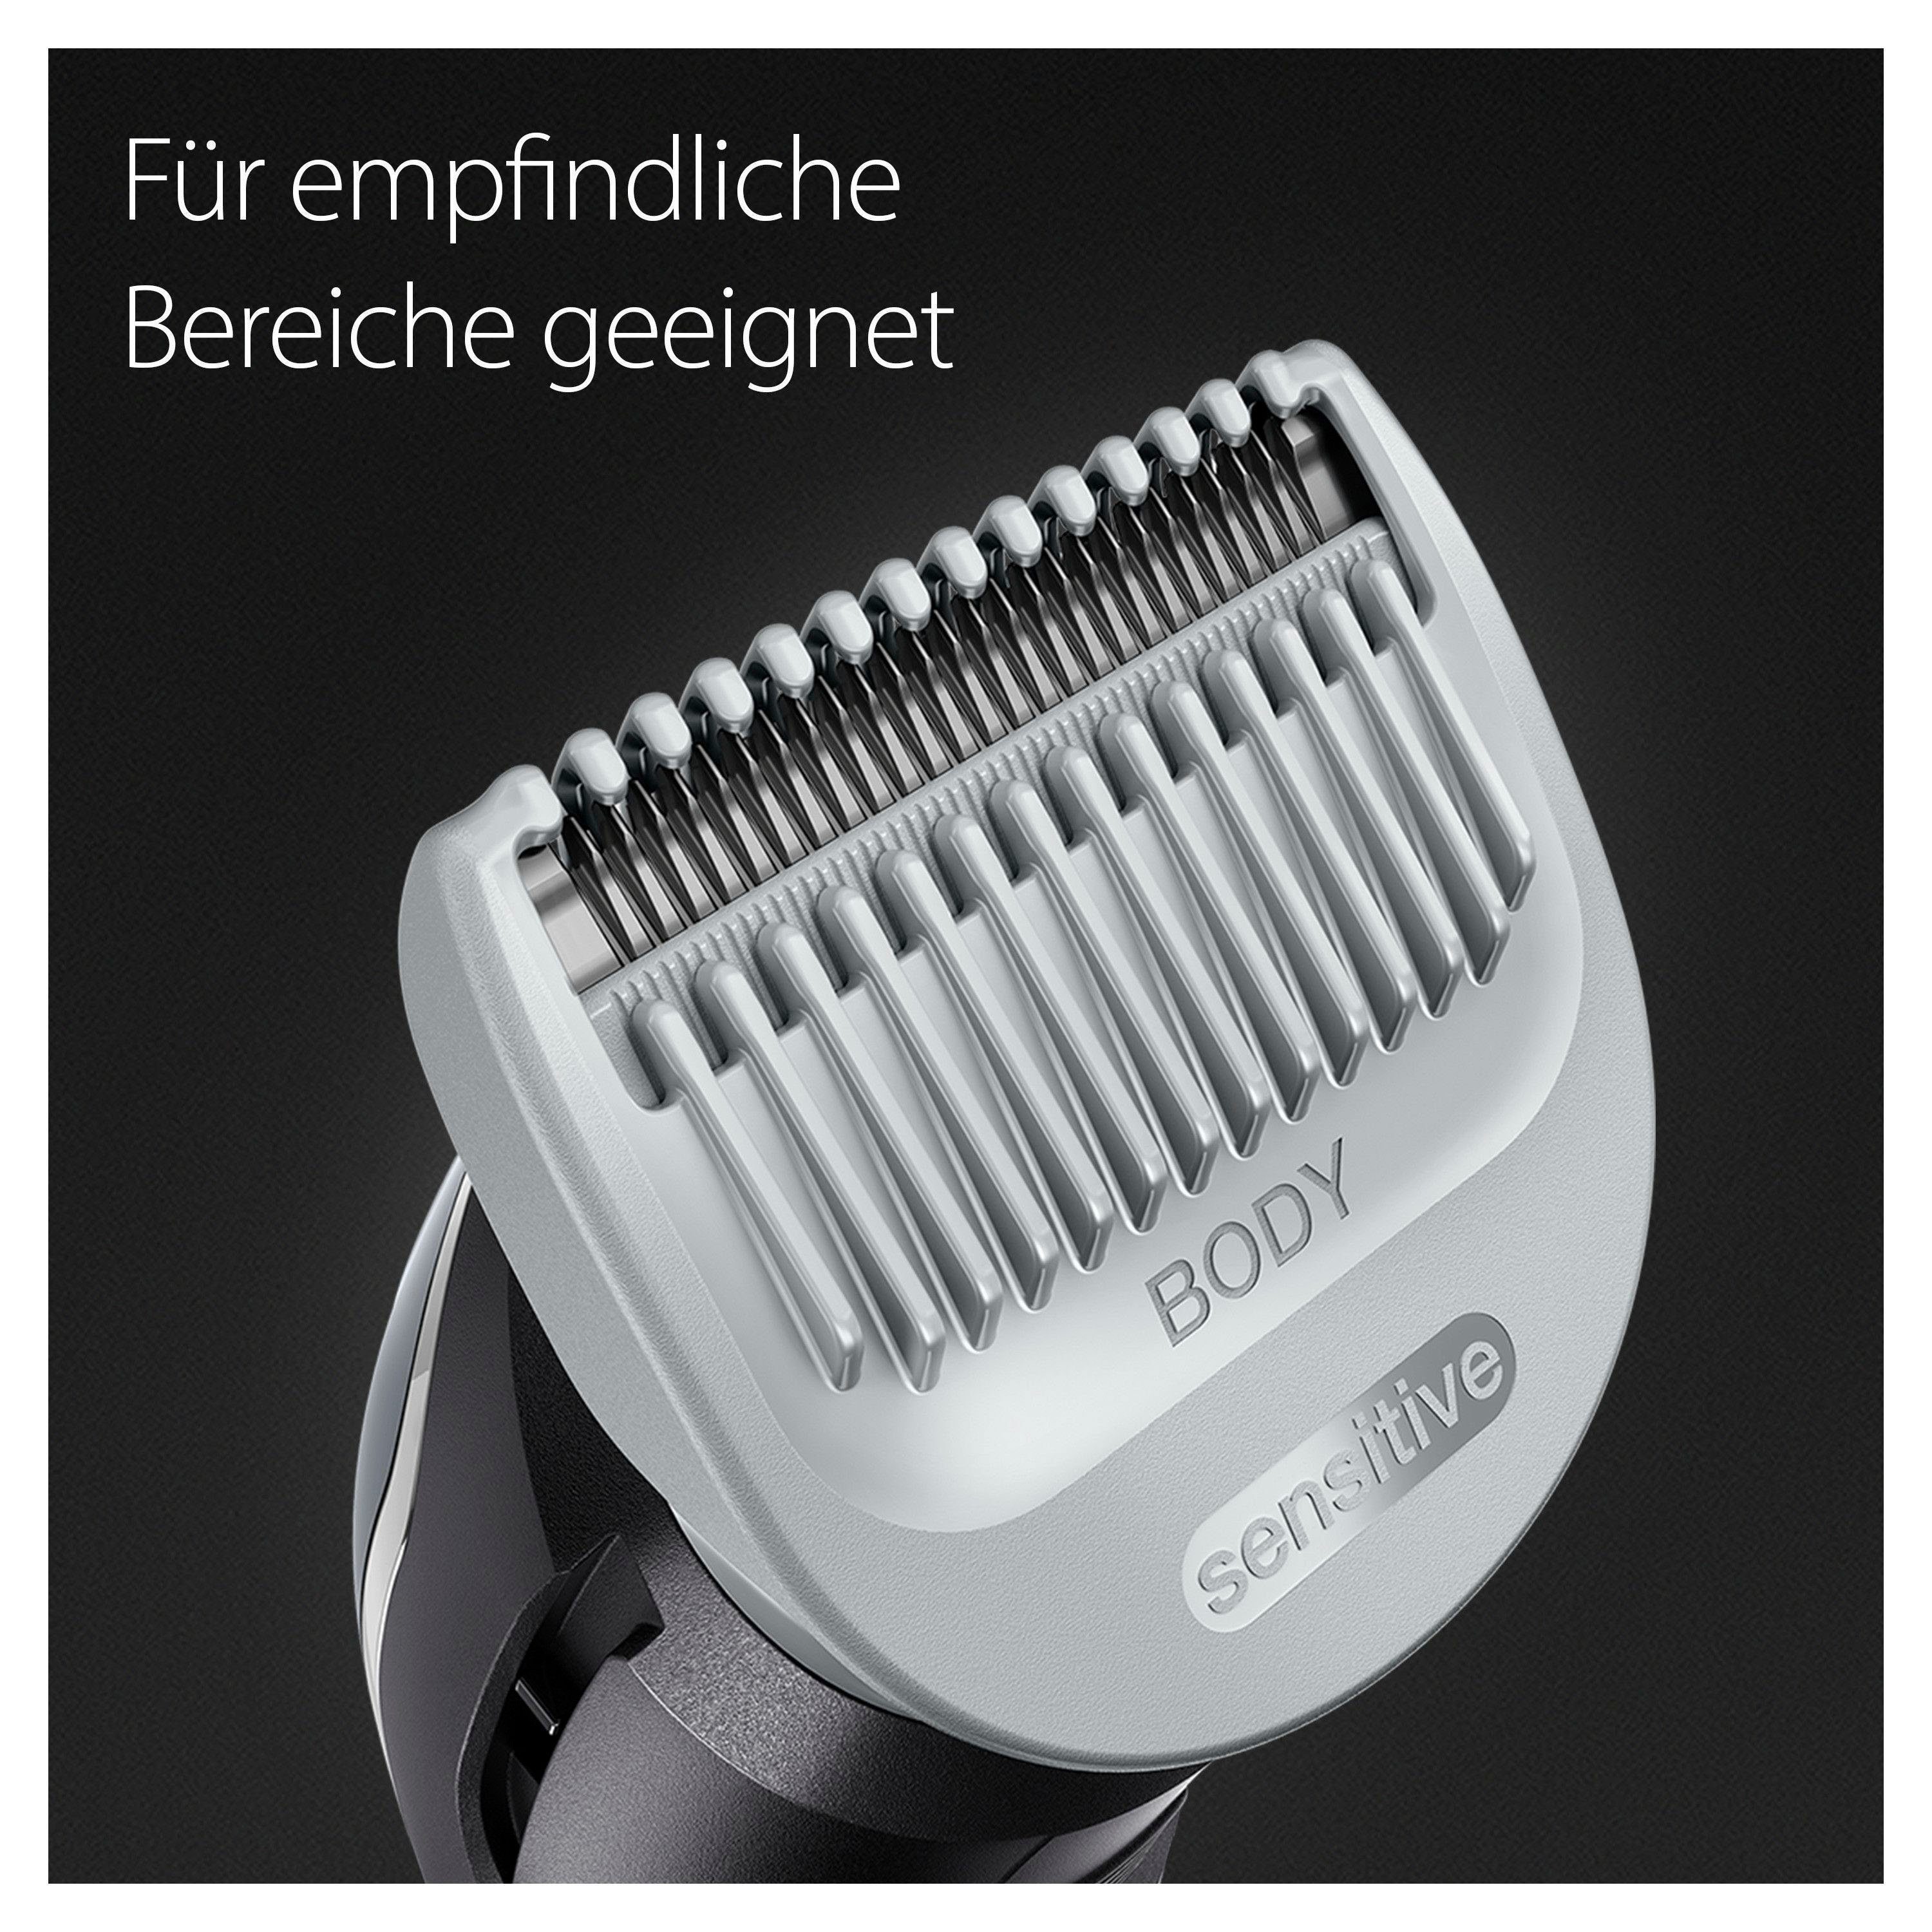 BG3340, Abwaschbar Haarschneider SkinShield-Technologie, Braun Bodygroomer